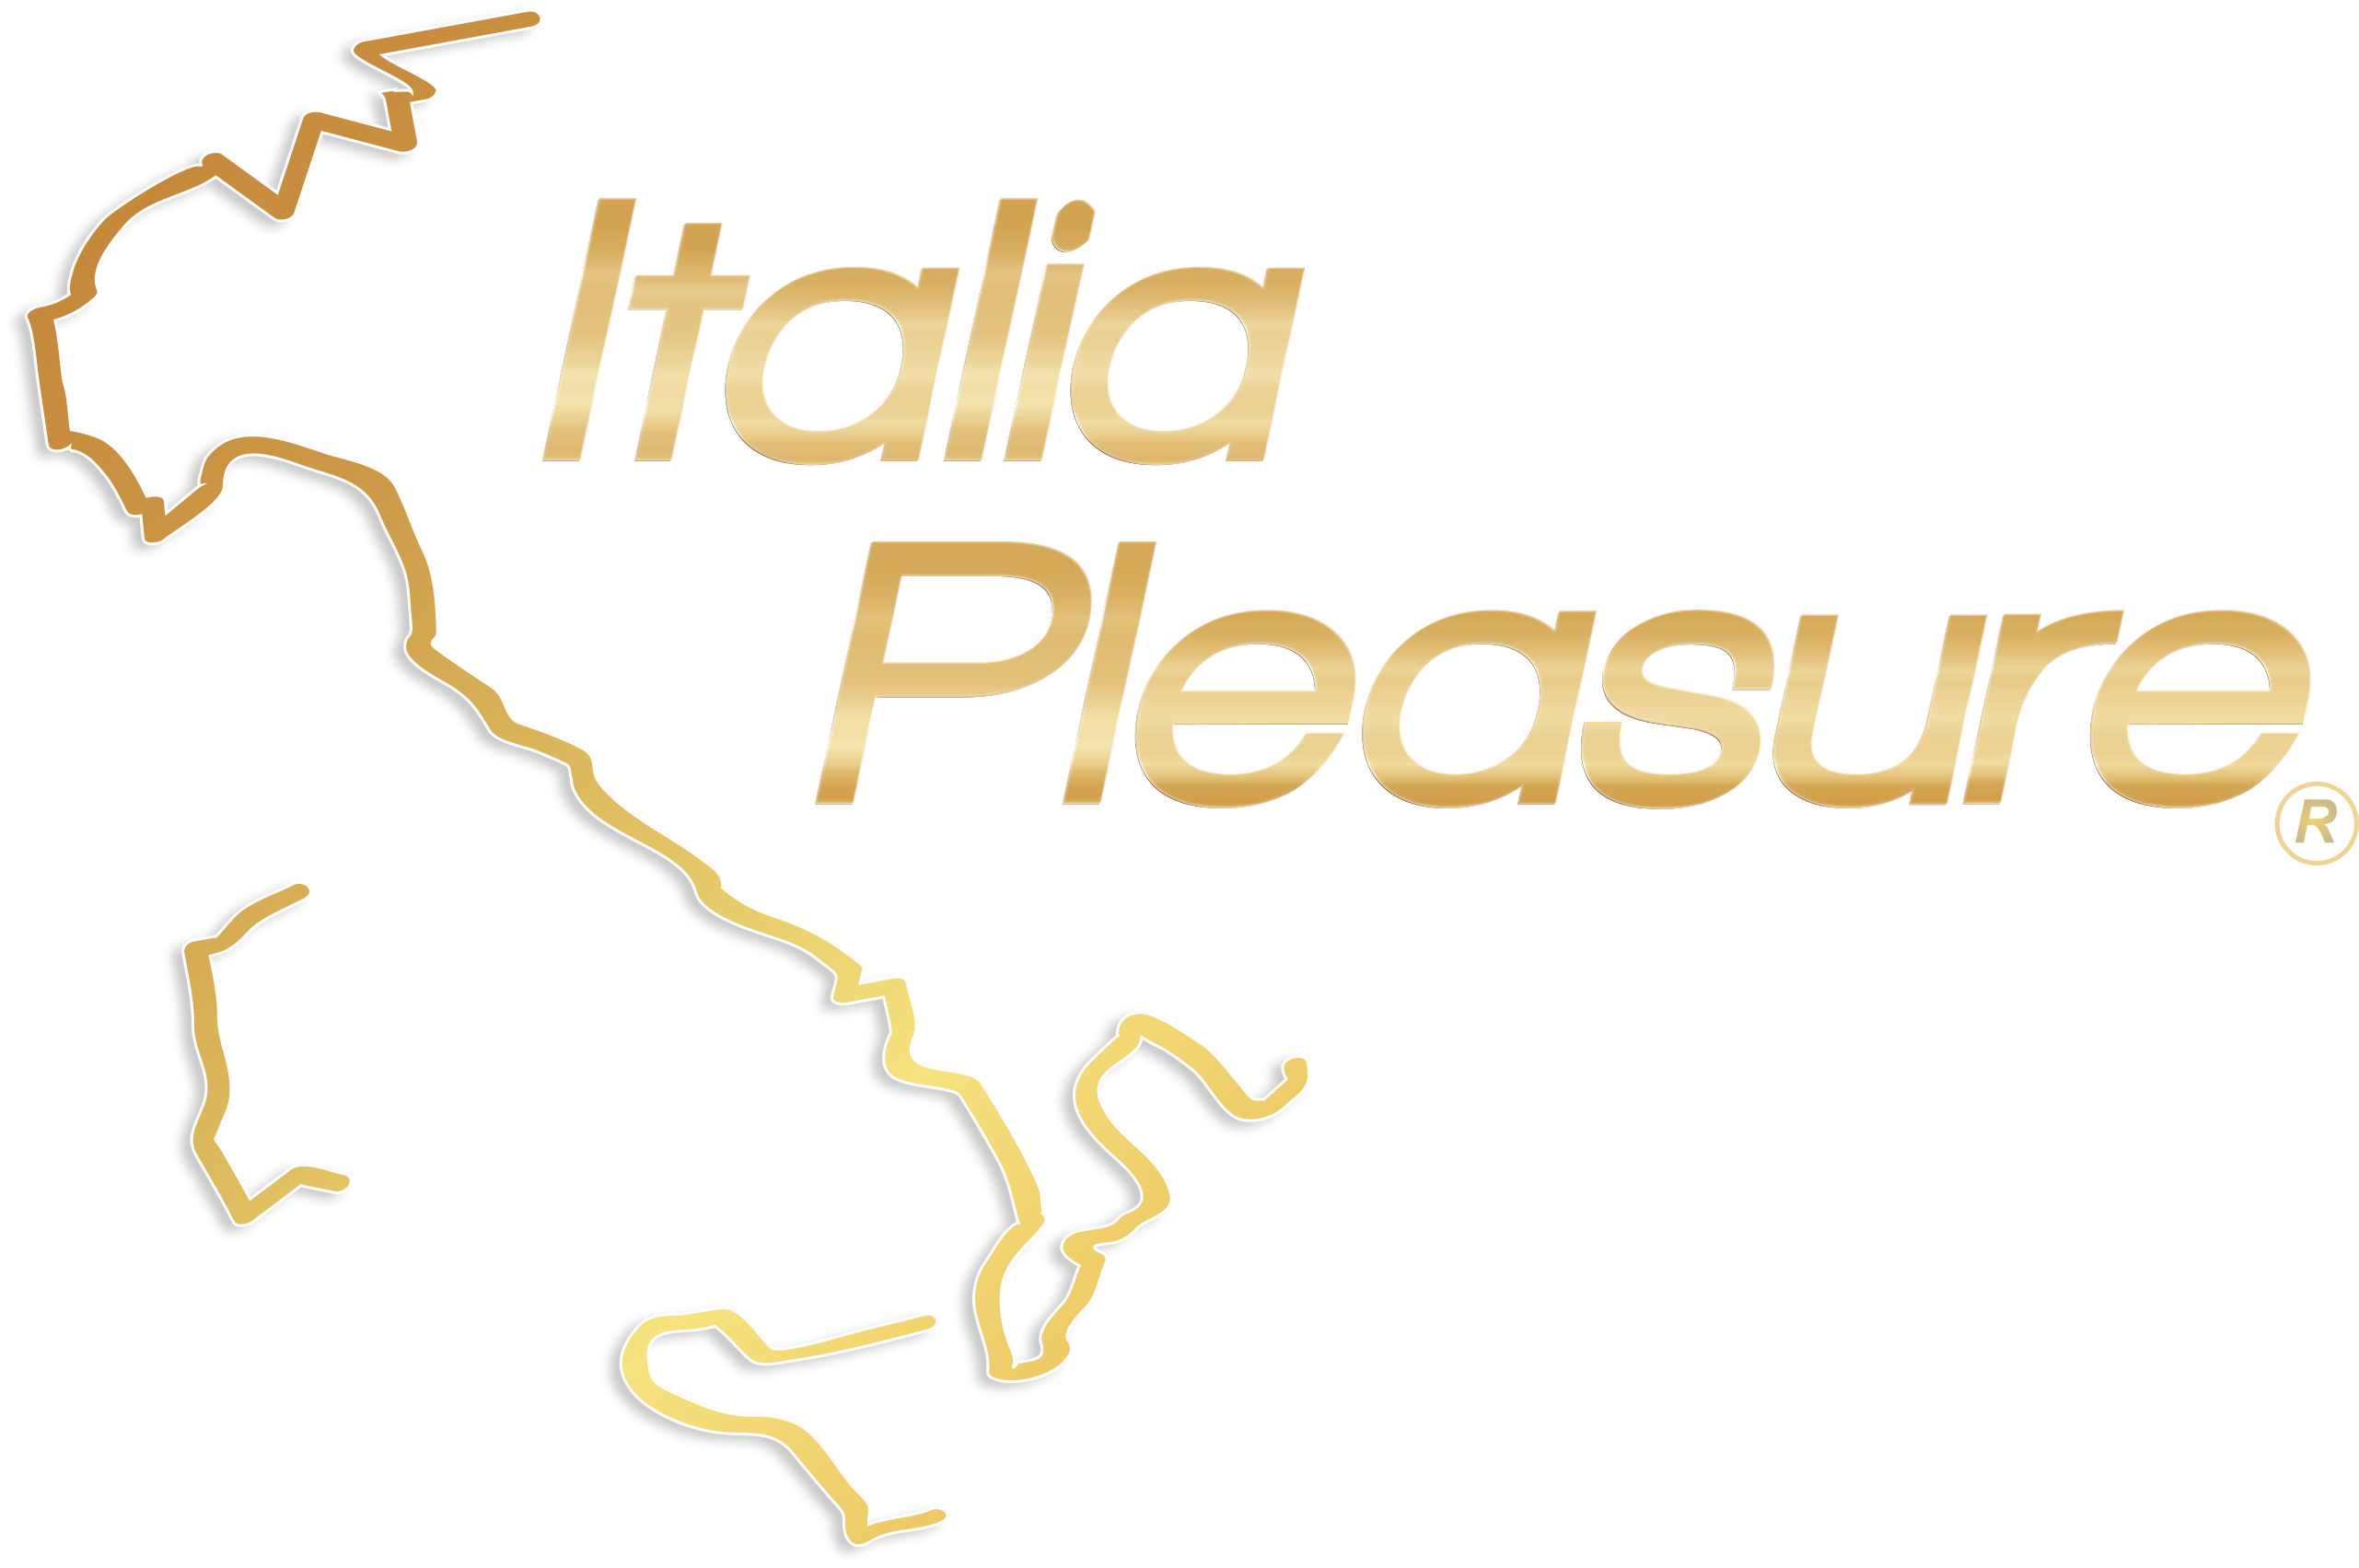 Italia Pleasure